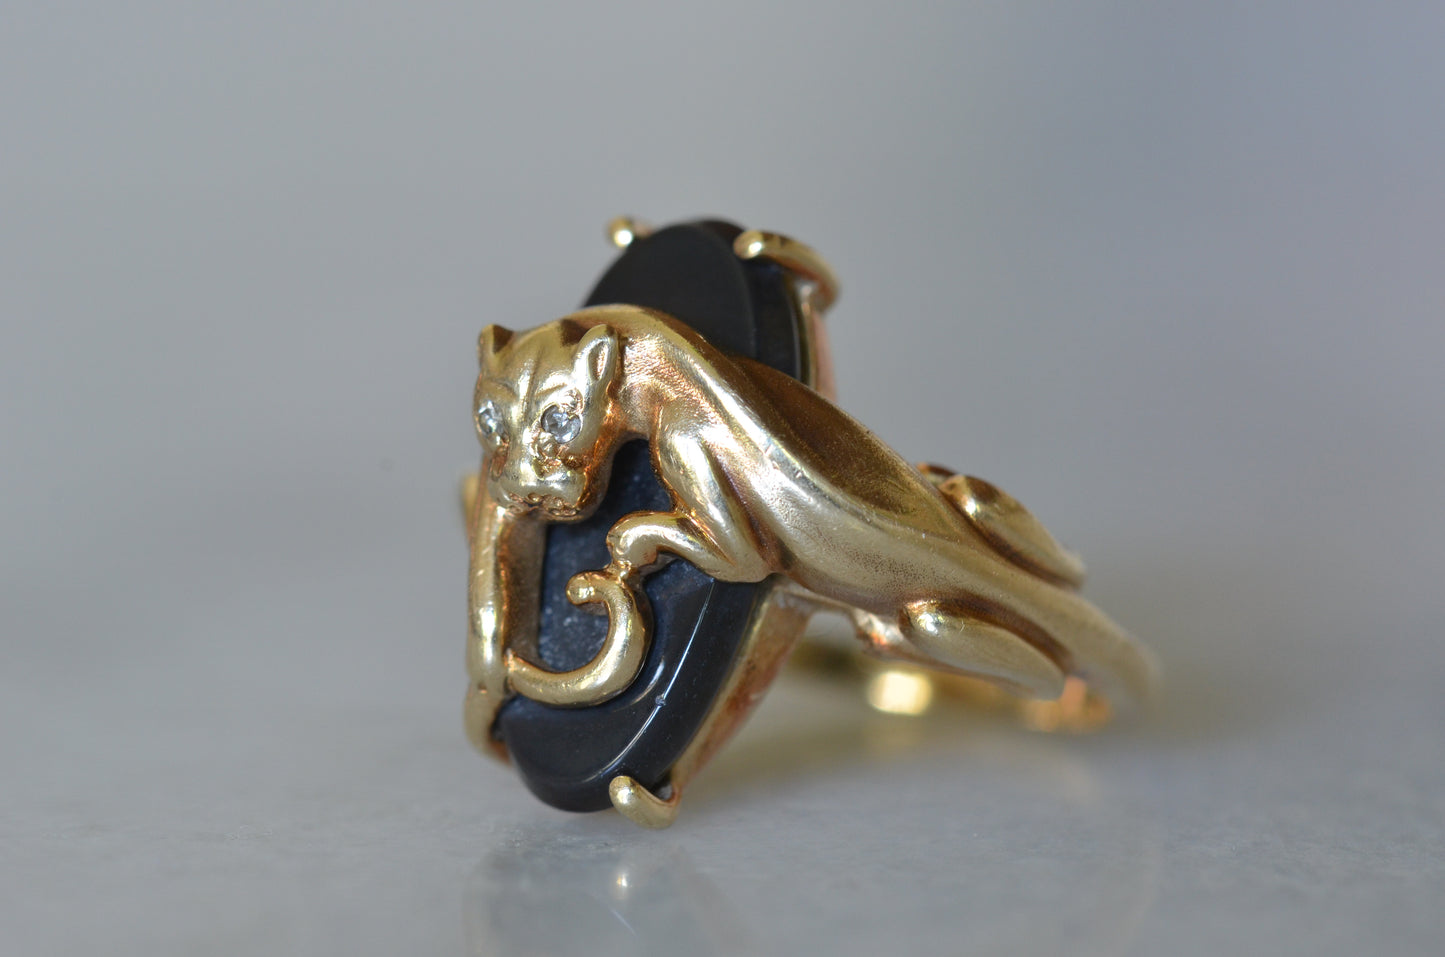 Dynamic Black Panther Vintage Ring